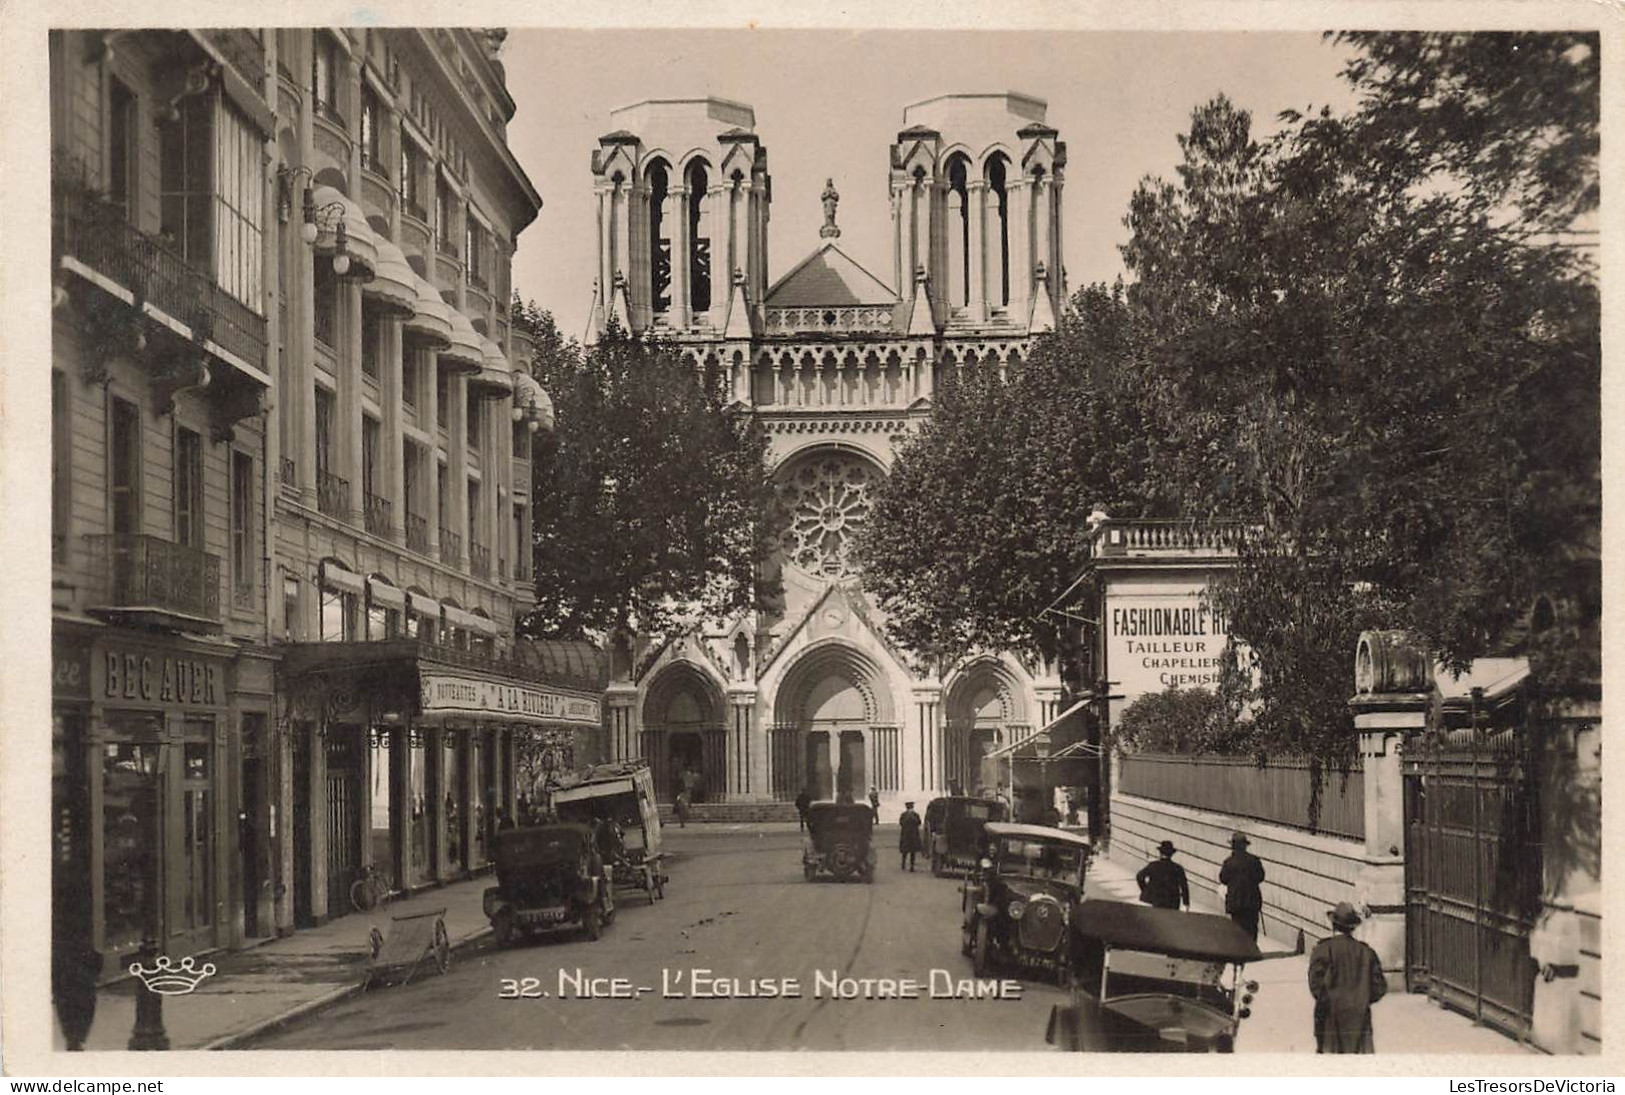 FRANCE - Nice - L'Eglise Notre Dame - Fashionable Tailleur Chapellier - Animé - Carte Postale Ancienne - Monuments